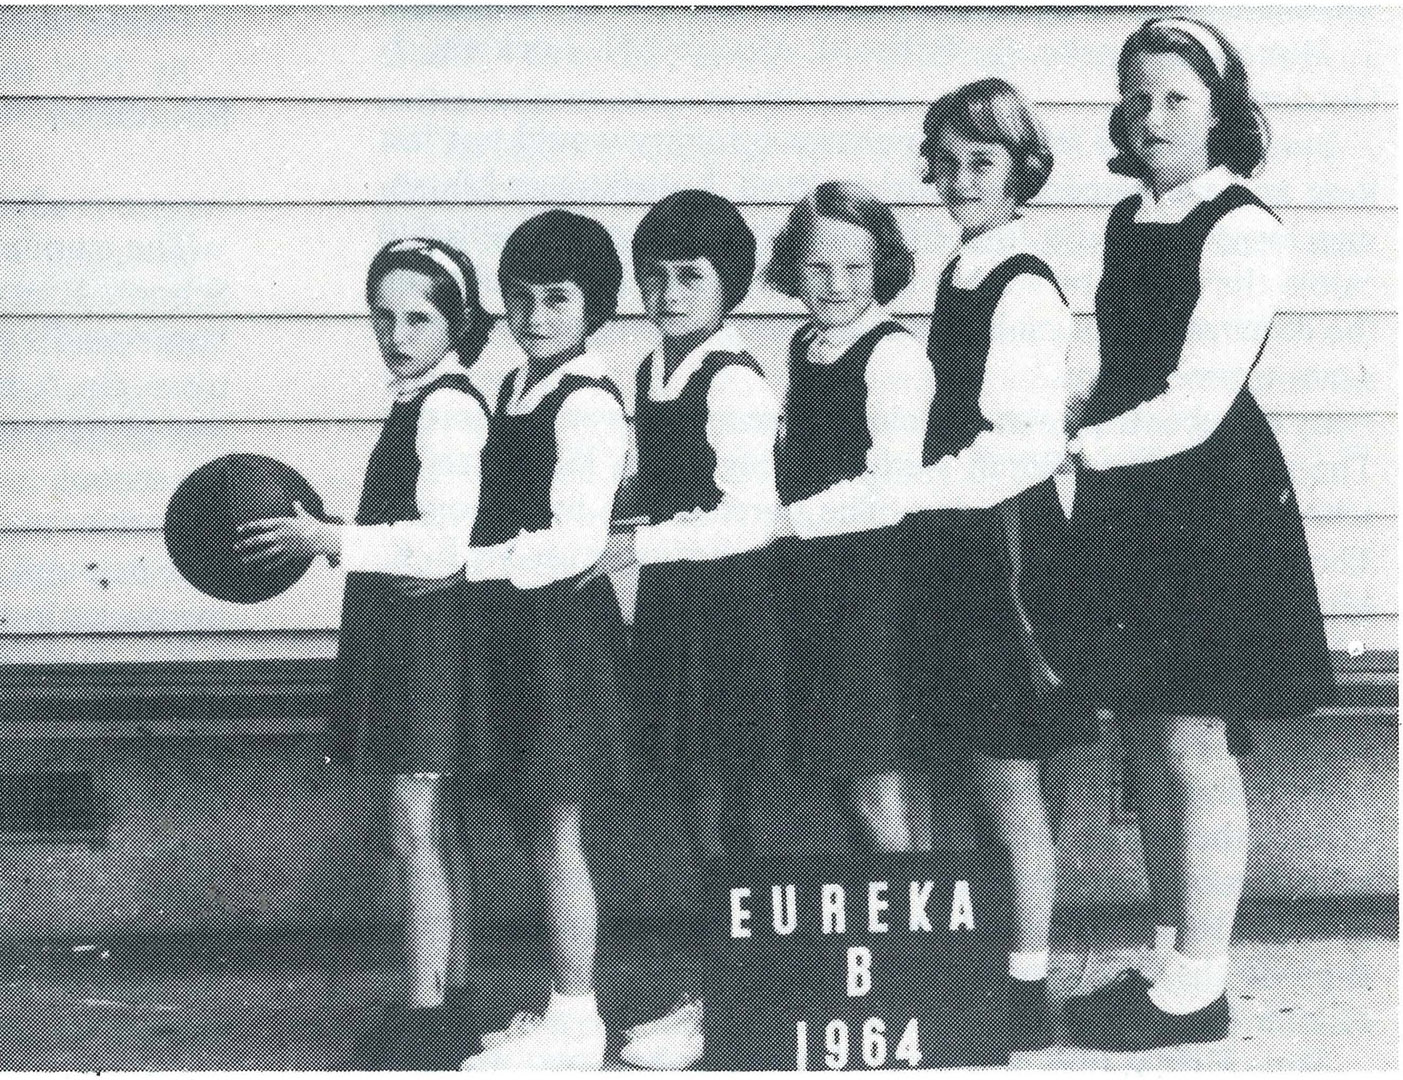 Eureka 'B' Netball Team 1964